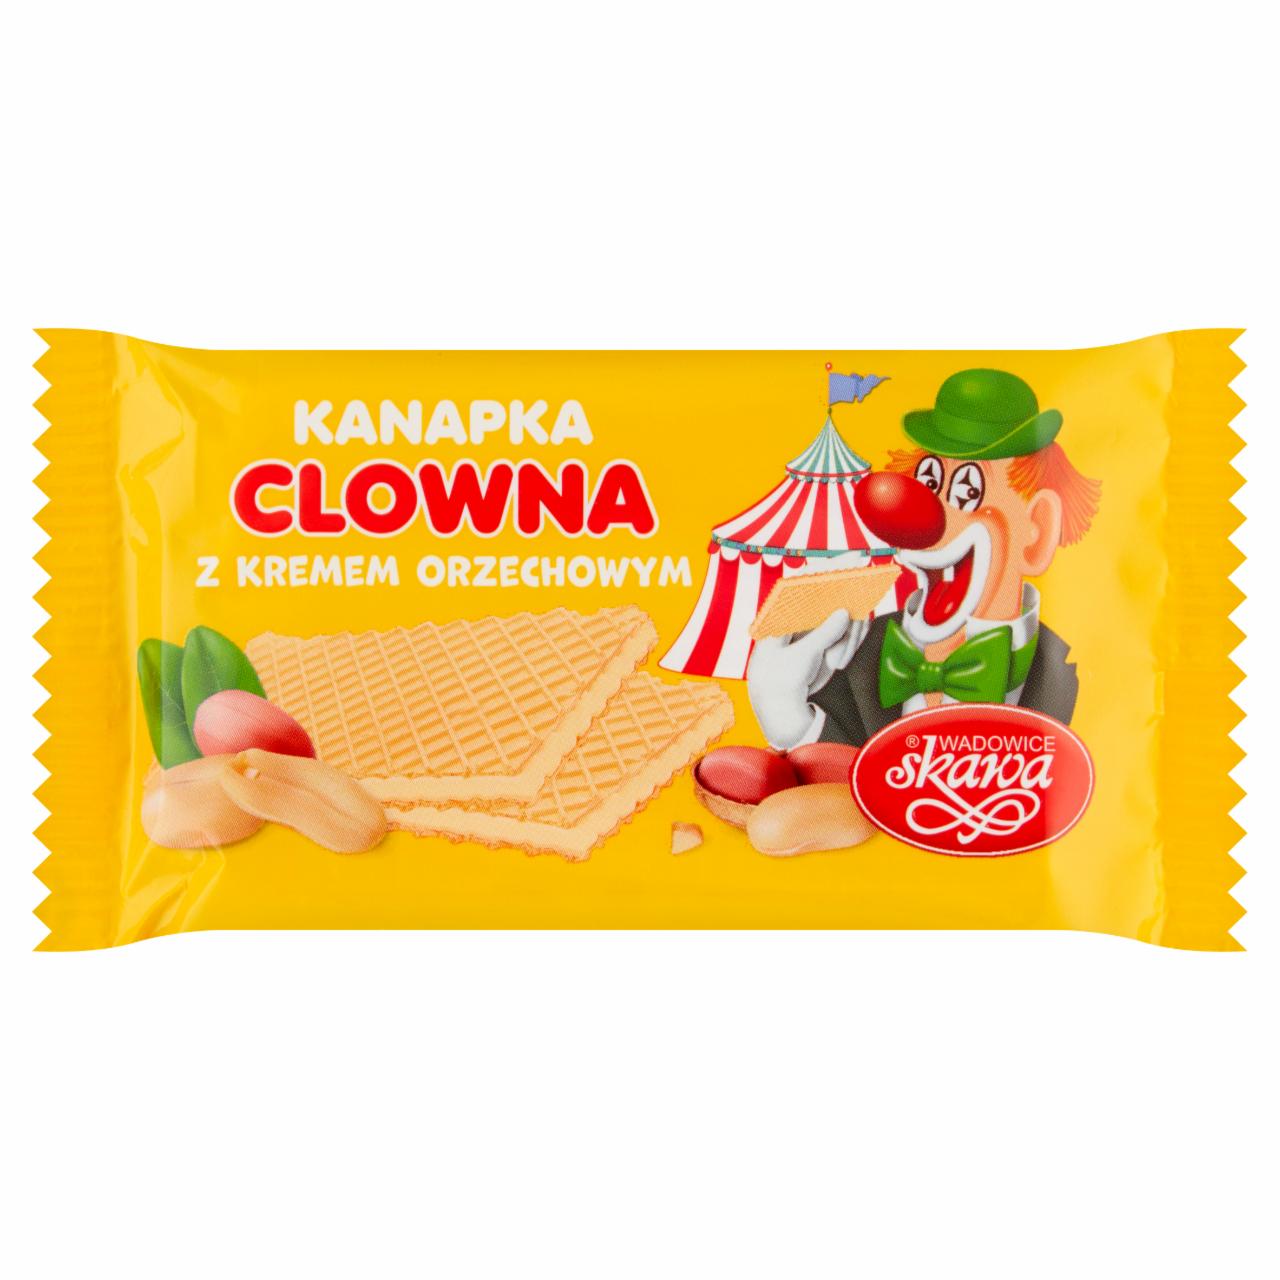 Zdjęcia - Wadowice Skawa Kanapka clowna z kremem orzechowym 26 g